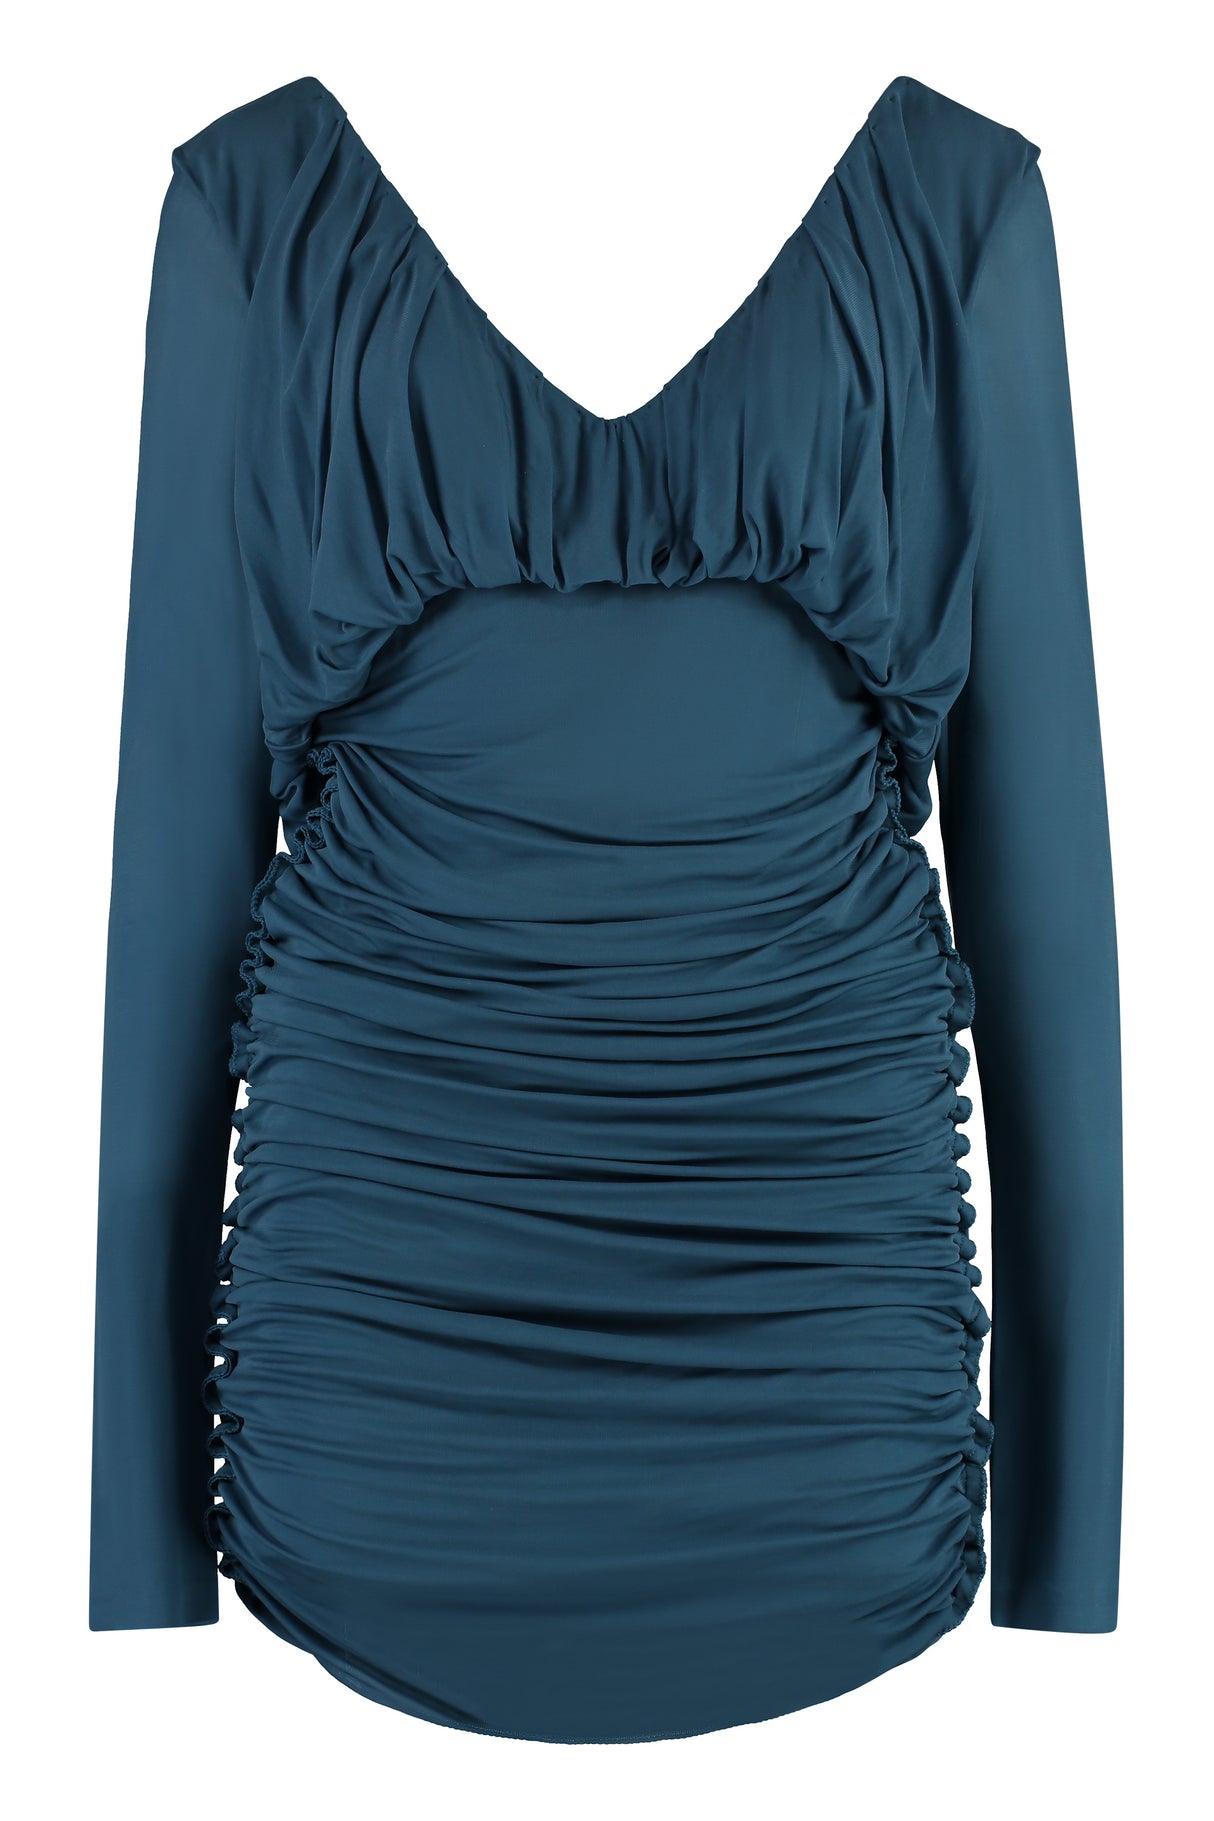 فستان نسائي منسوج بلون الأزرق لموسم الصيف ٢٠٢٣